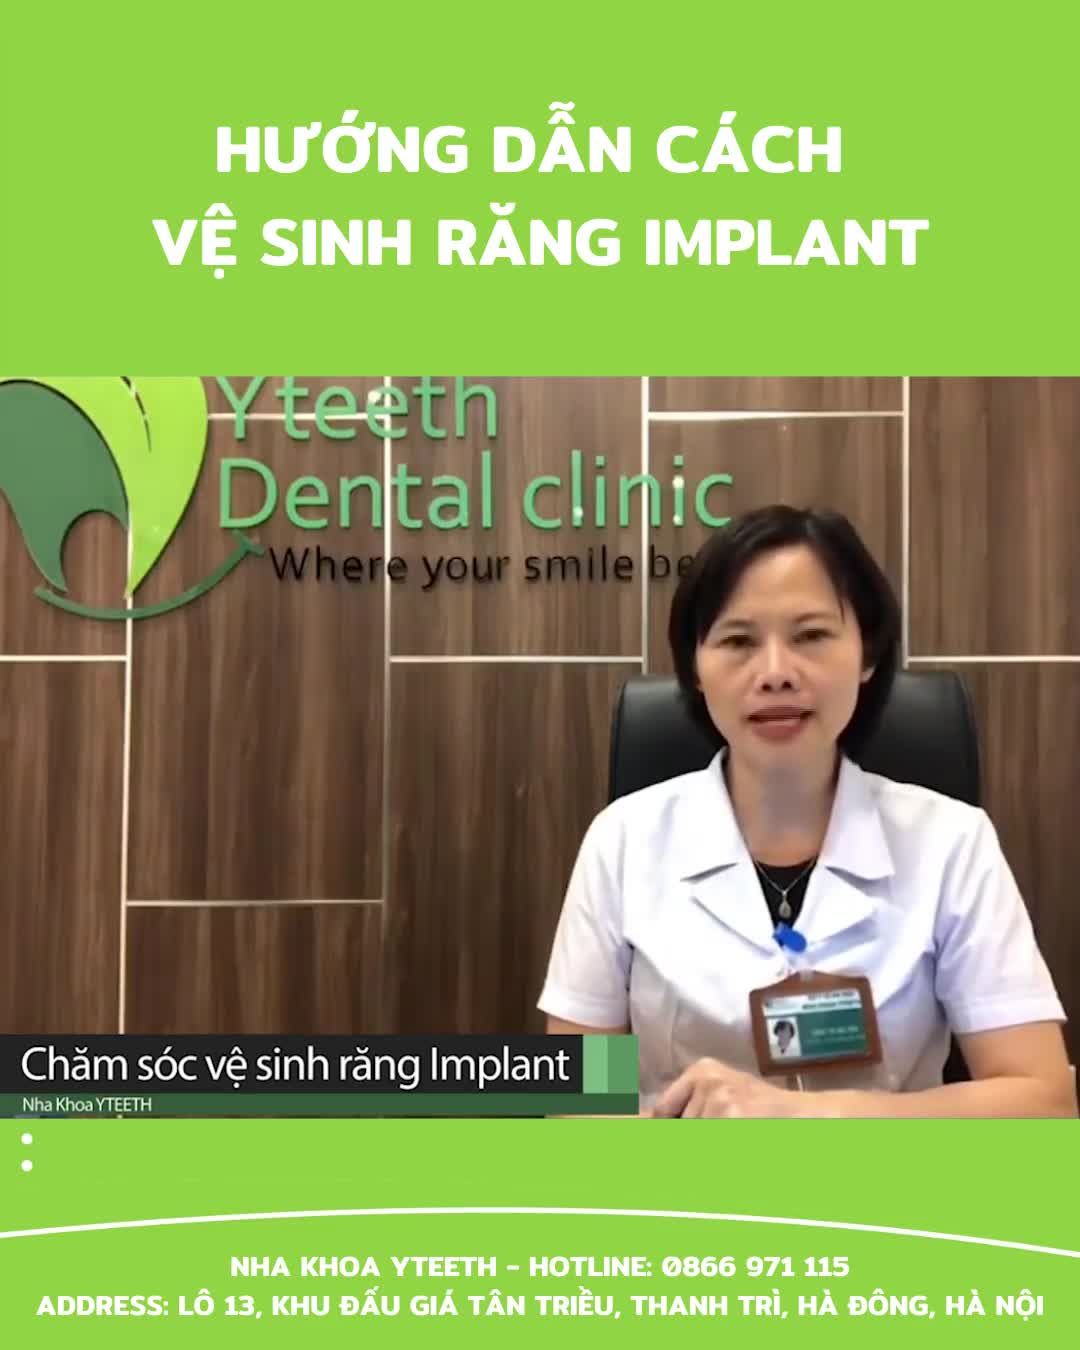 Trồng răng implant là phương pháp thay thế răng mất giúp đảm bảo chức năng ăn nhai của răng